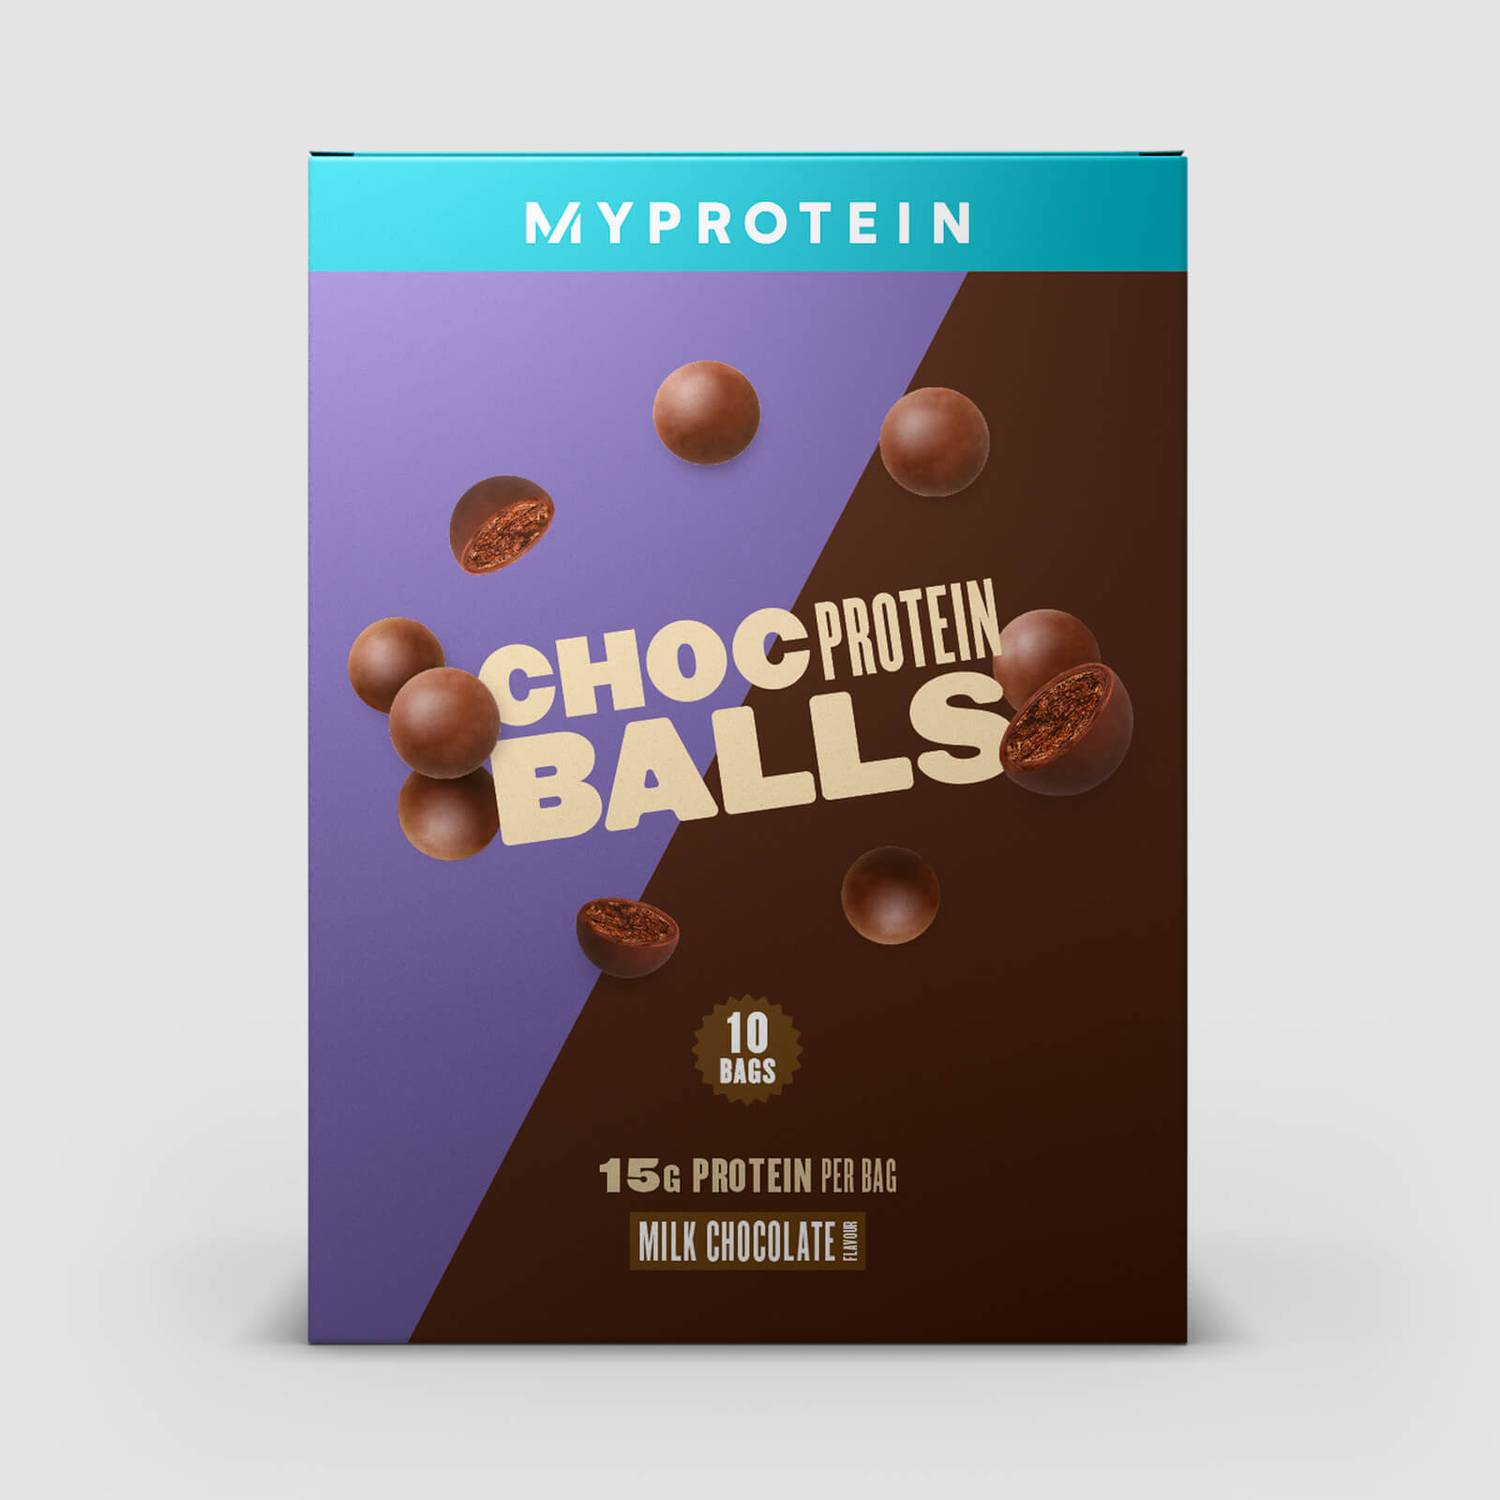 Myprotein Protein Balls - Chocolate